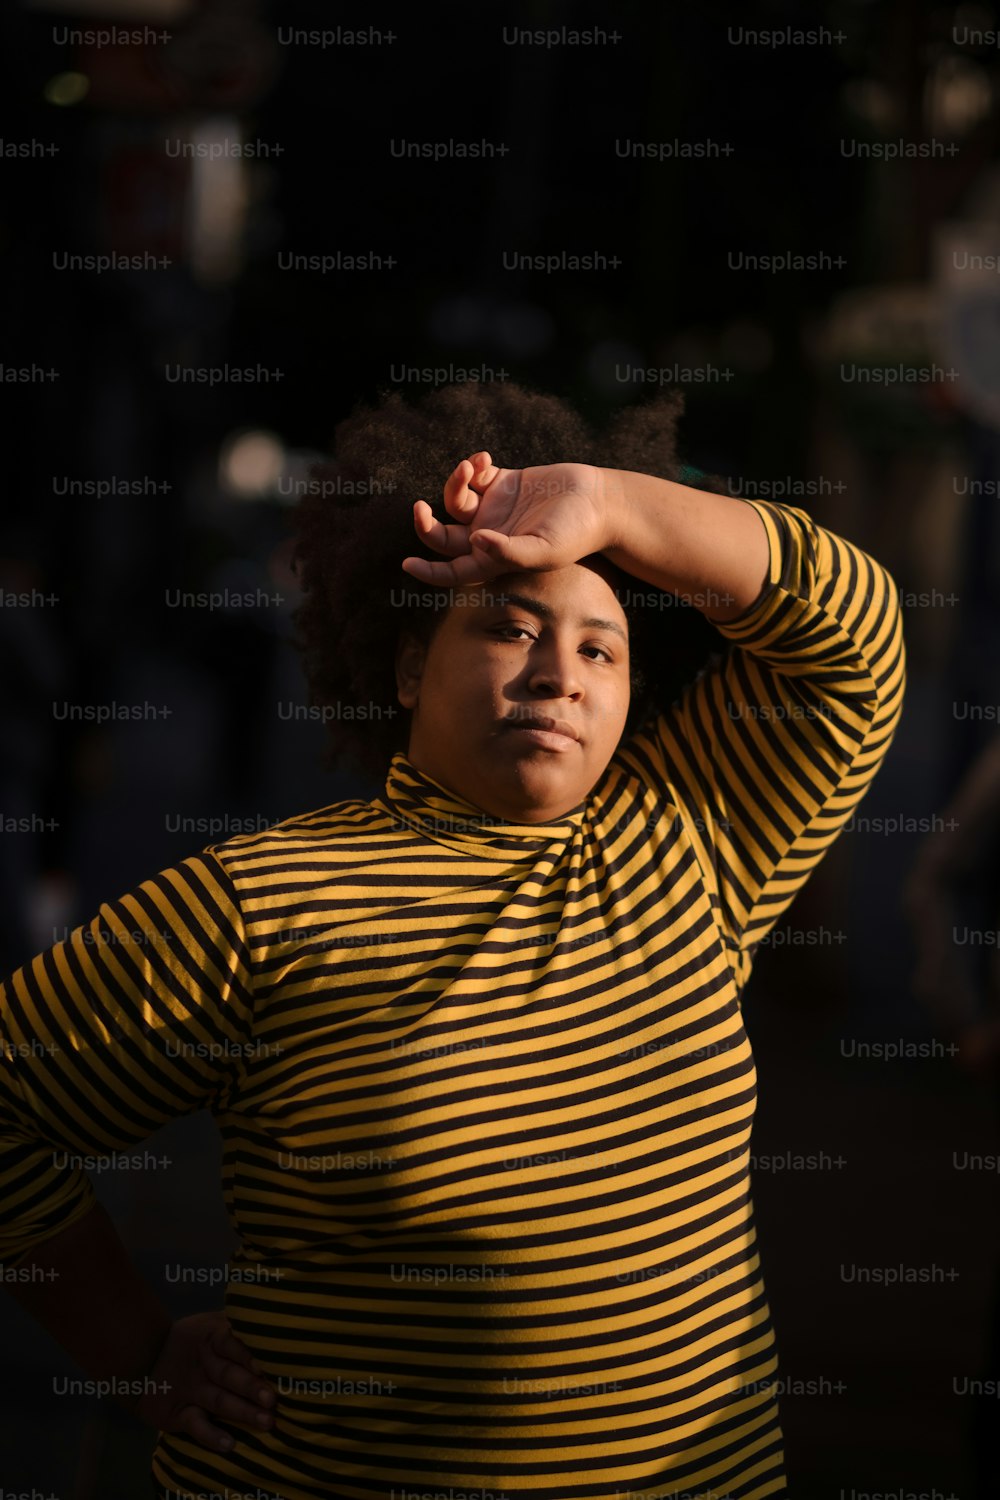 Eine Frau im gelb-schwarz gestreiften Hemd